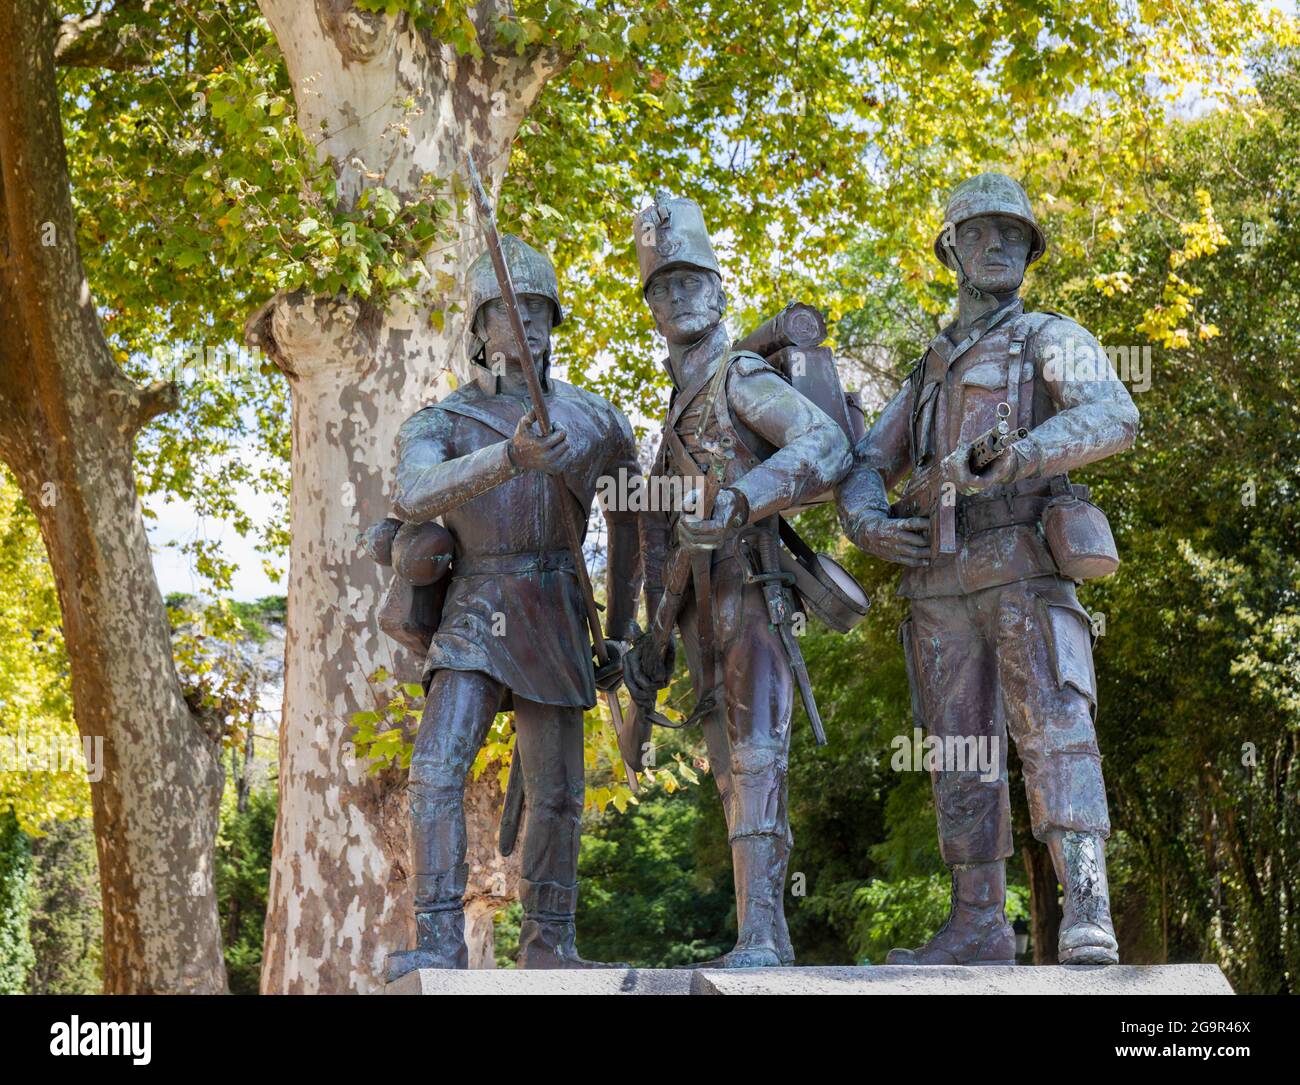 Monumento ai soldati portoghesi morti nelle guerre coloniali d'oltremare del Portogallo. Mafra, distretto di Lisbona, Portogallo. Foto Stock